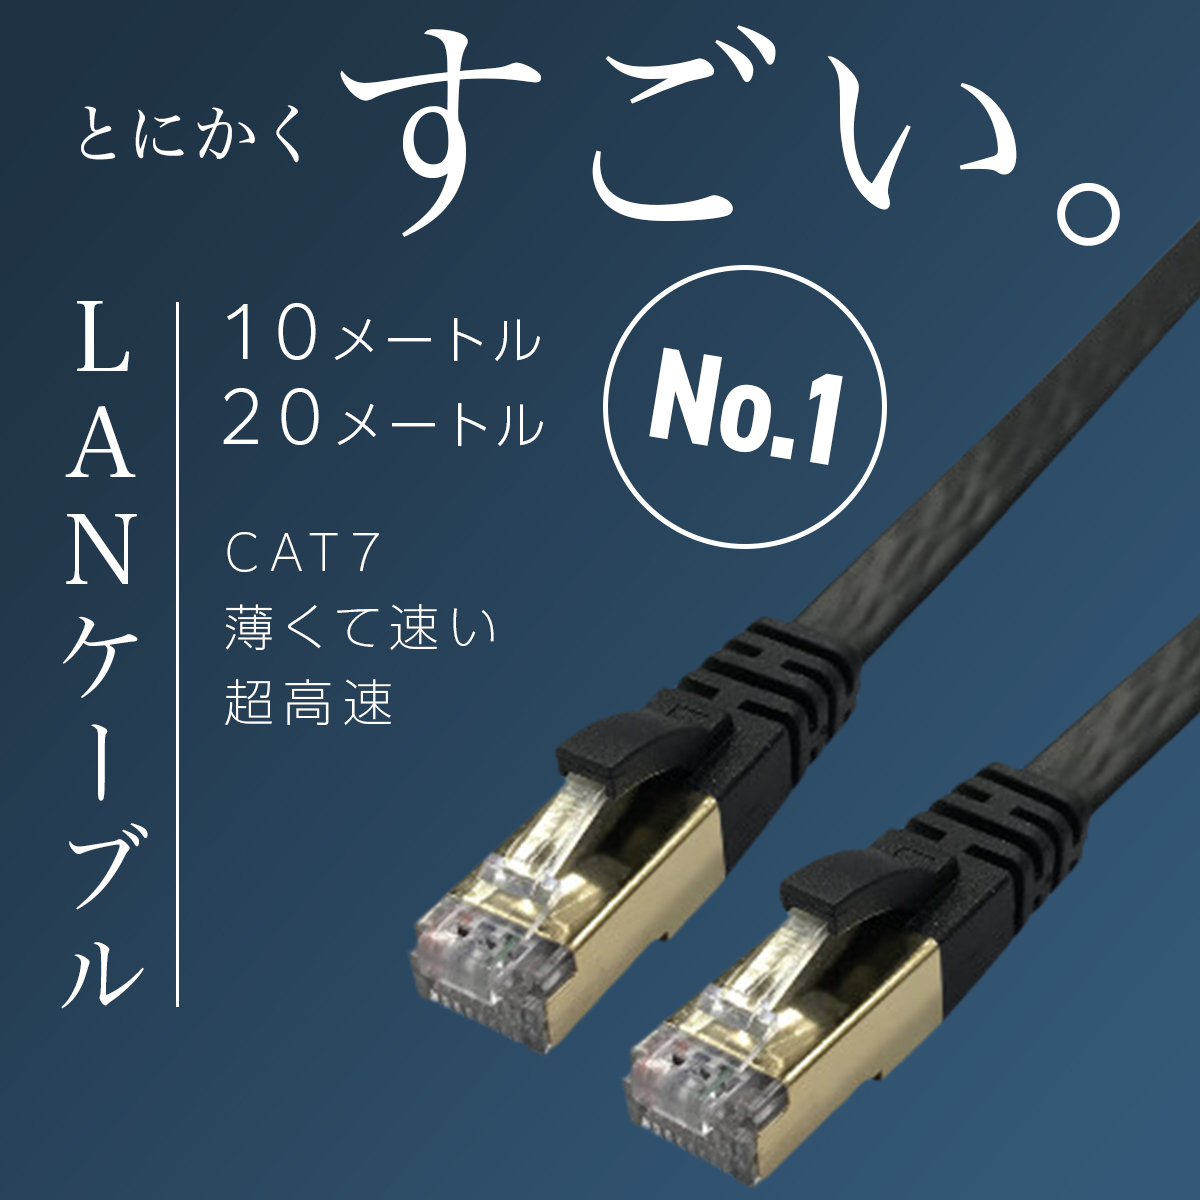 LAN кабель категория -7 CAT7 10m 20m высокая скорость 10Gbps PS4 PS5 Xbox